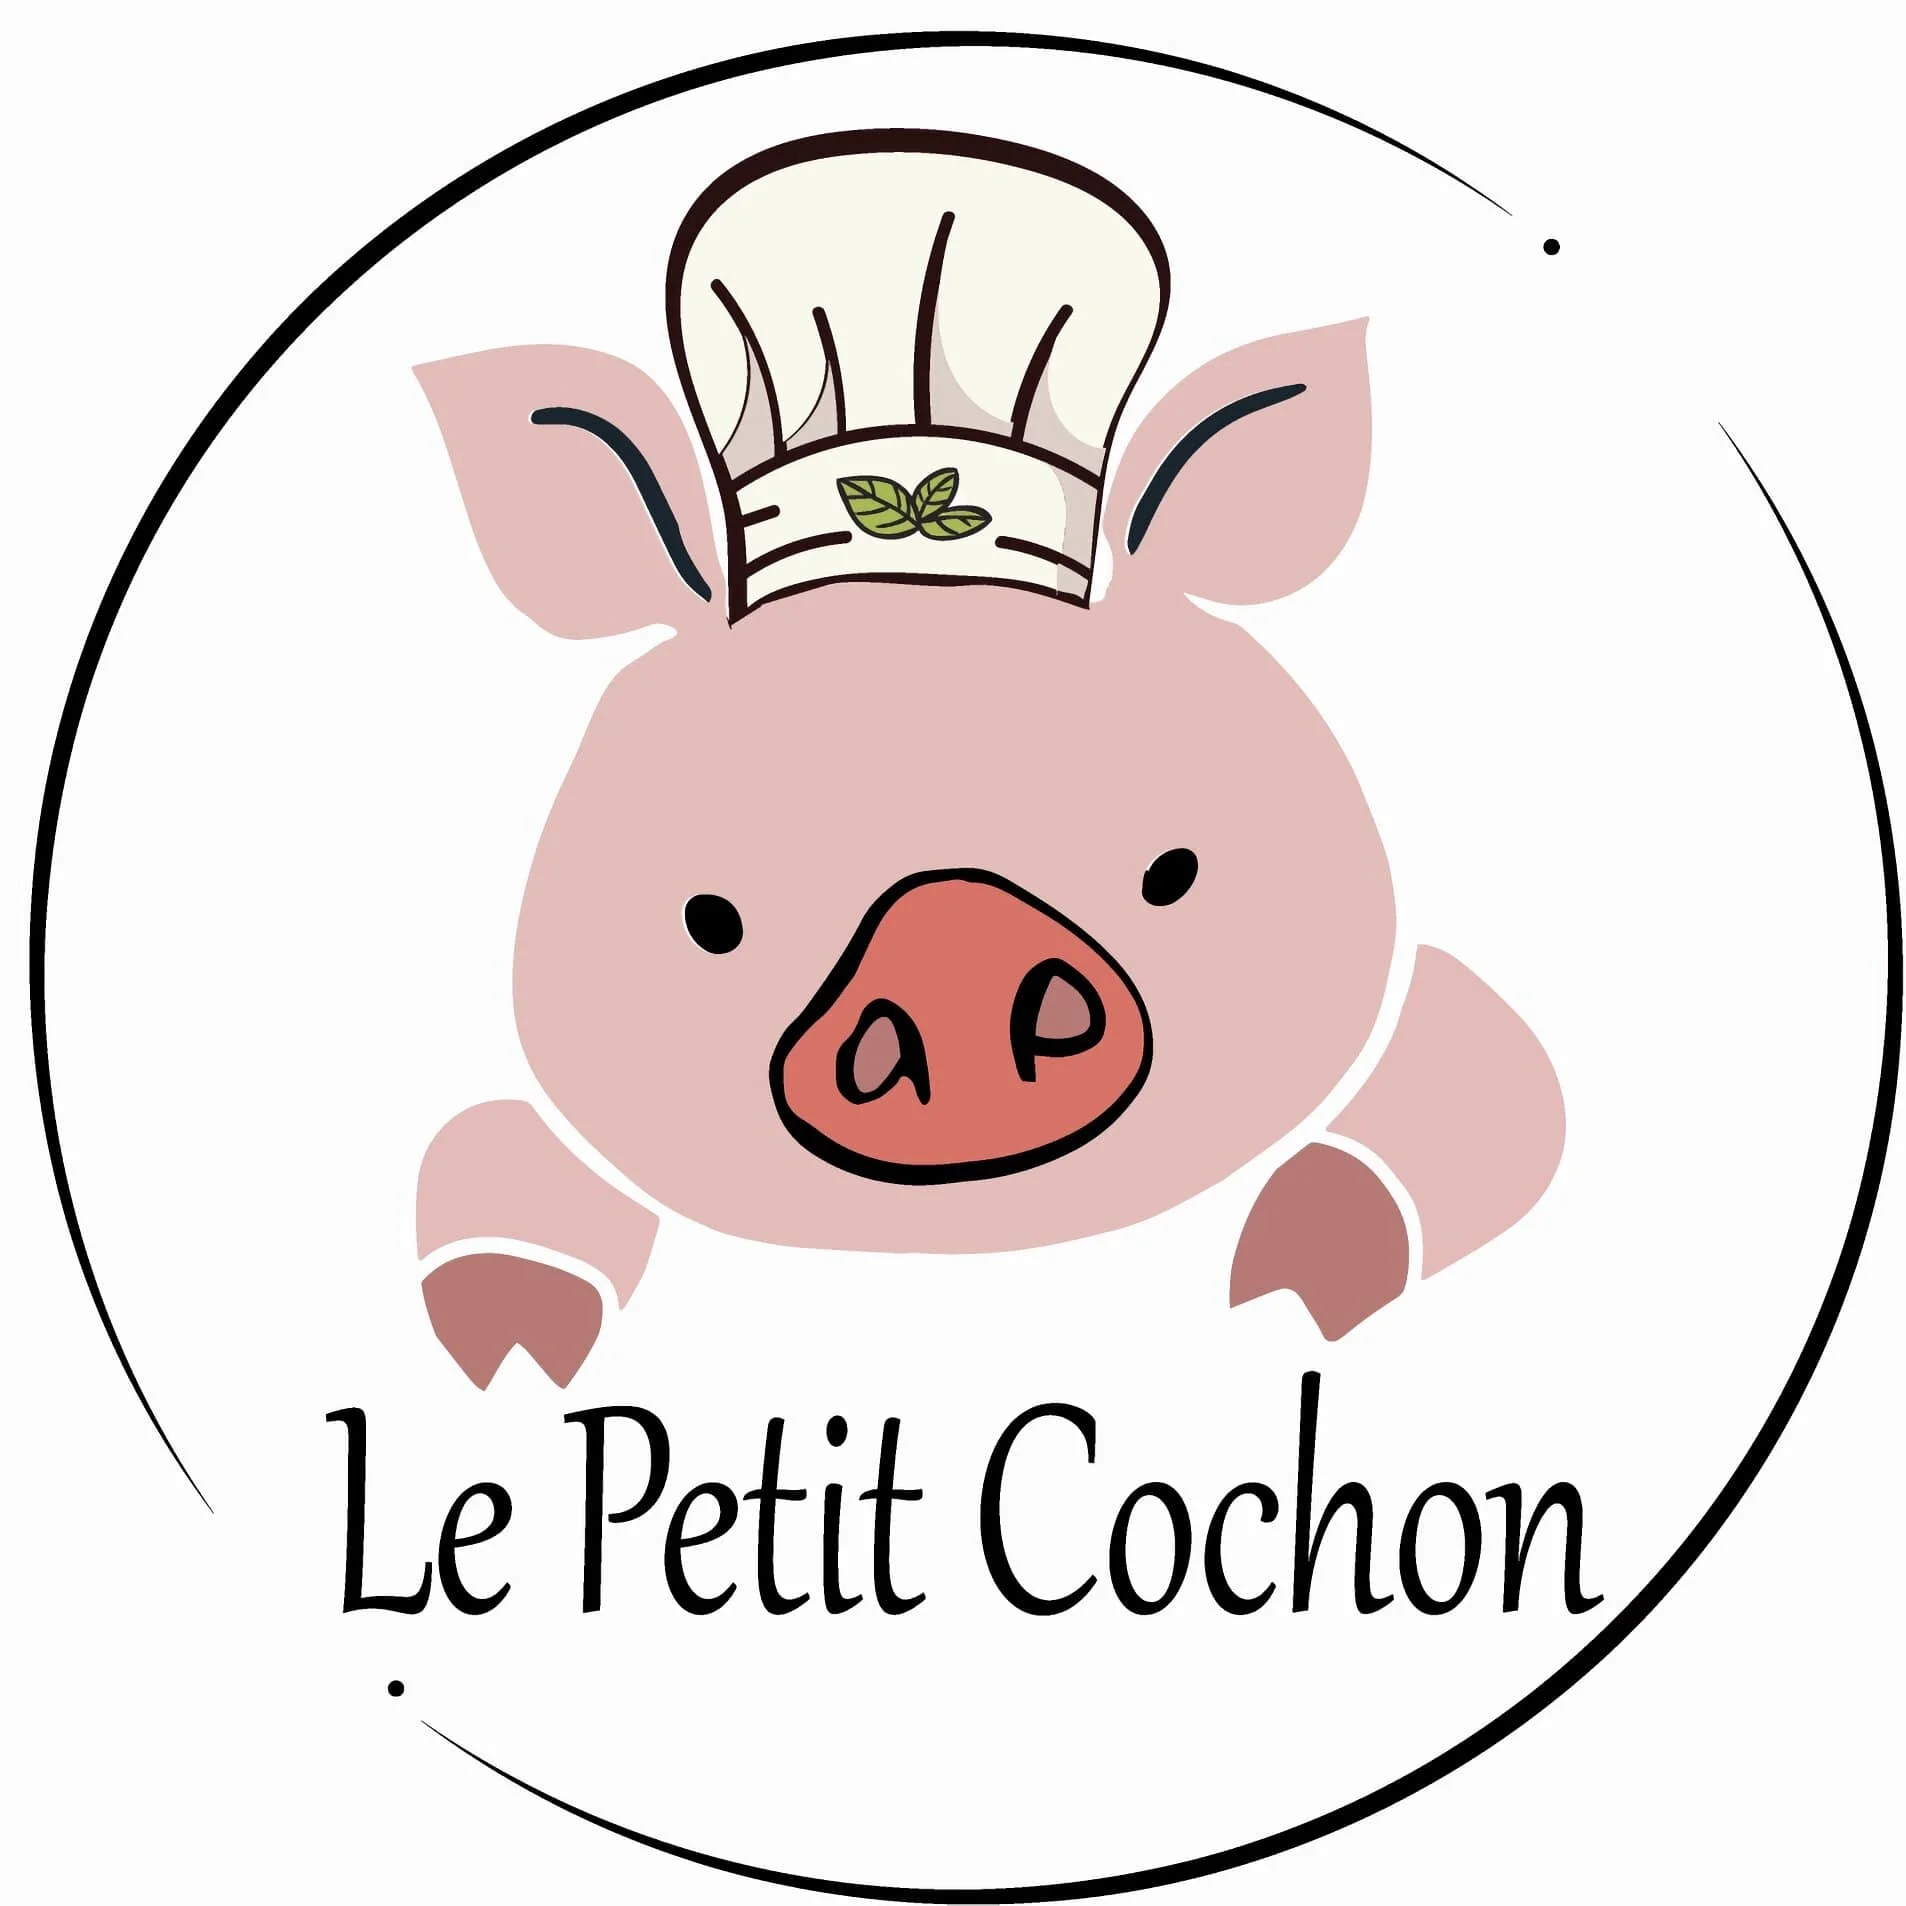 El Mejor chicharrón - Le Petit Cochon-5866